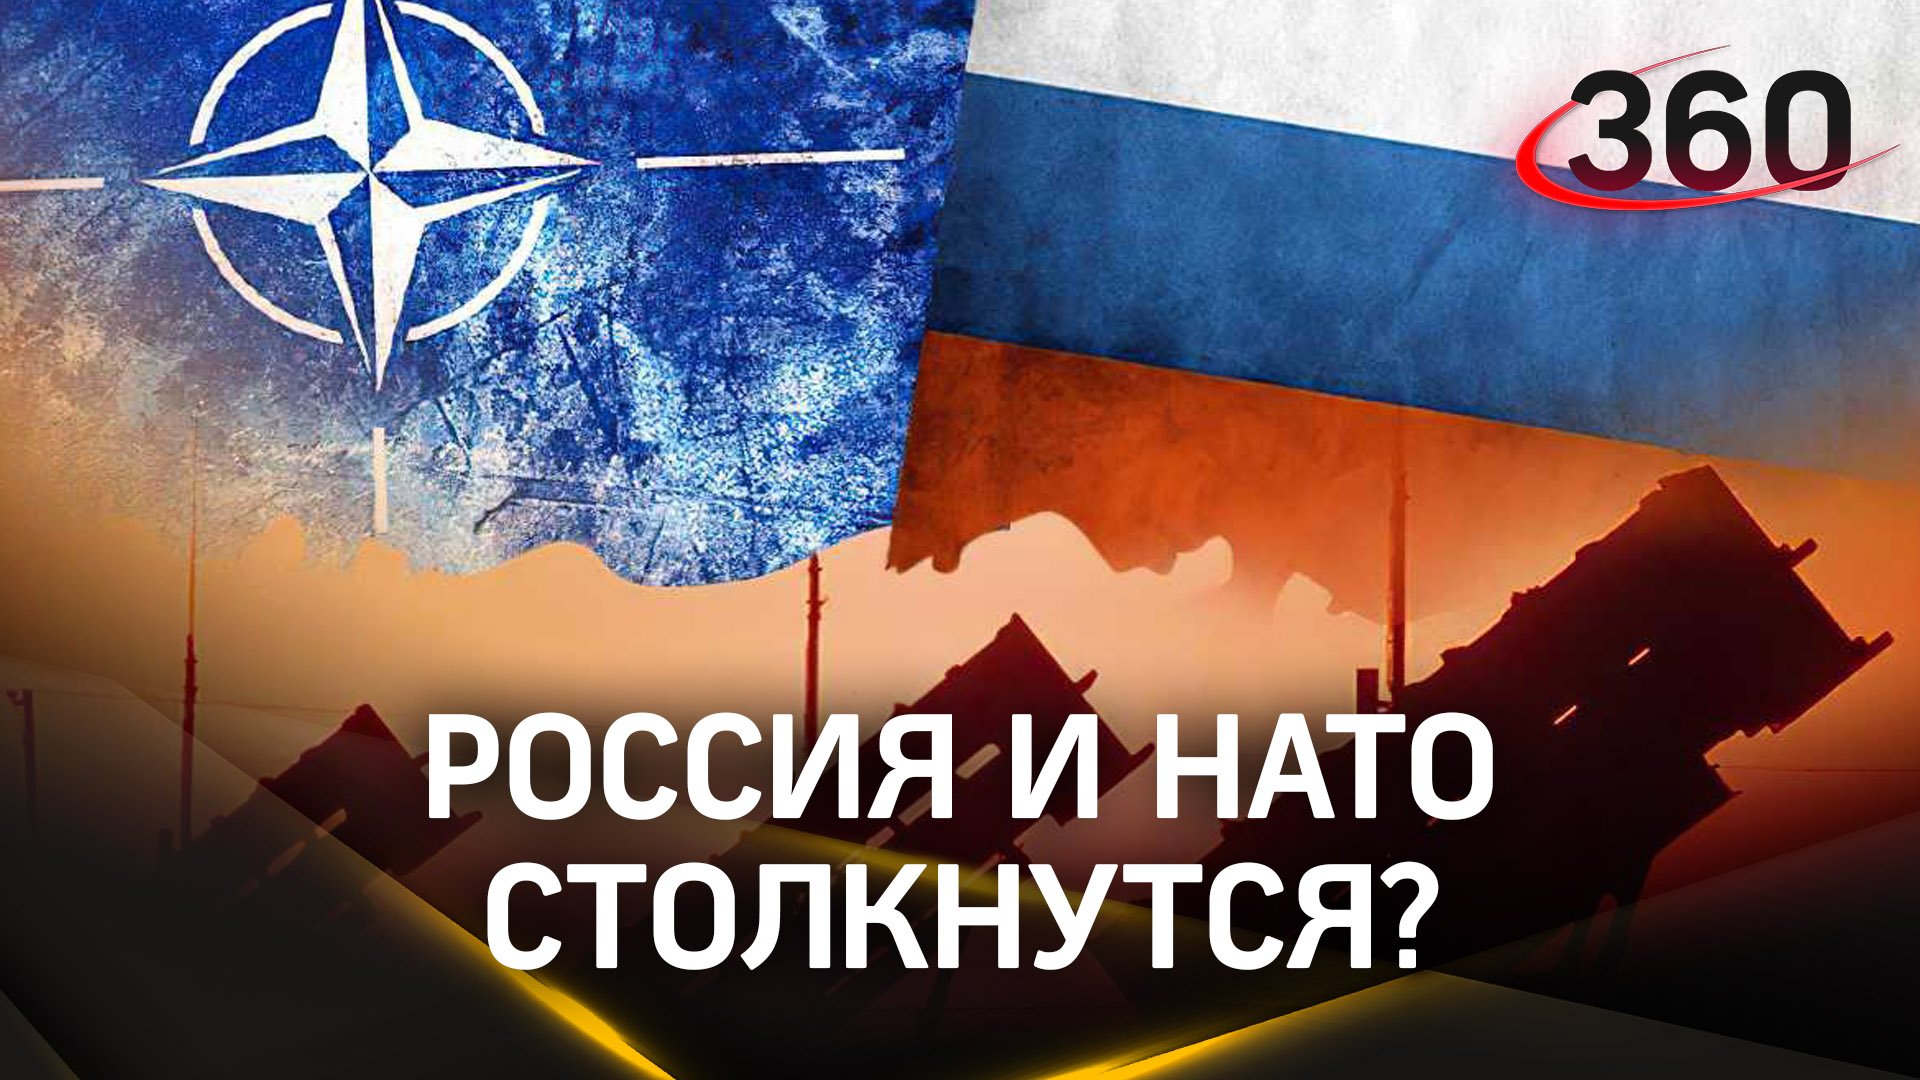 Войска НАТО на Украине: Запад готовится к войне с Россией. Грядет судный день?